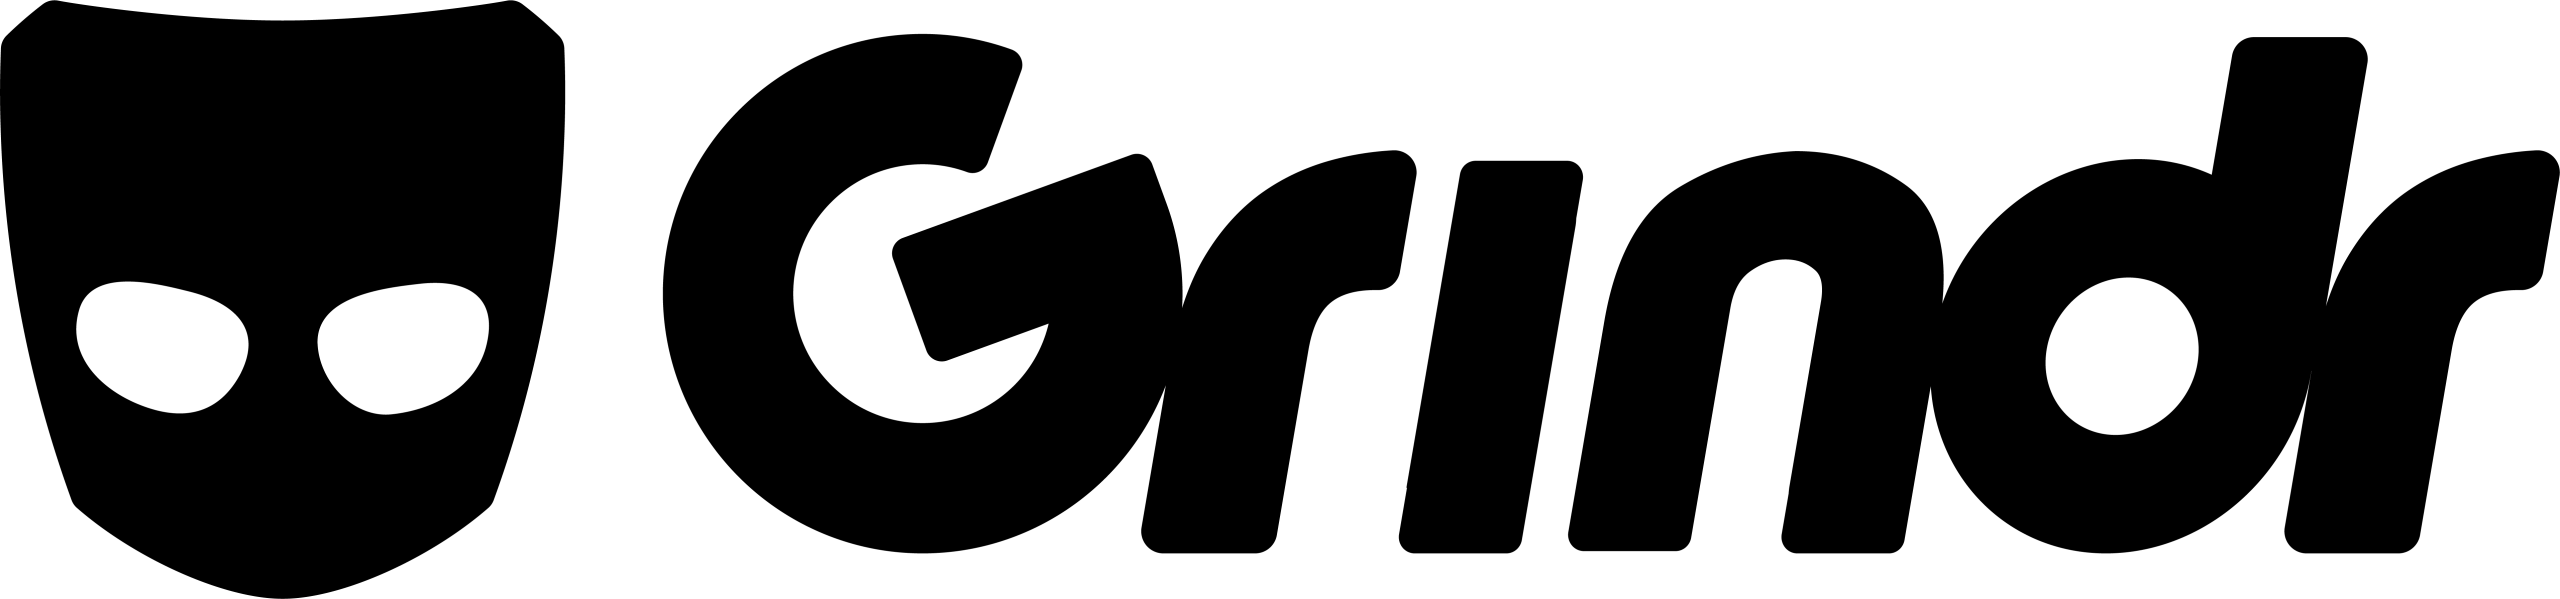 Grindr-Logo-Black